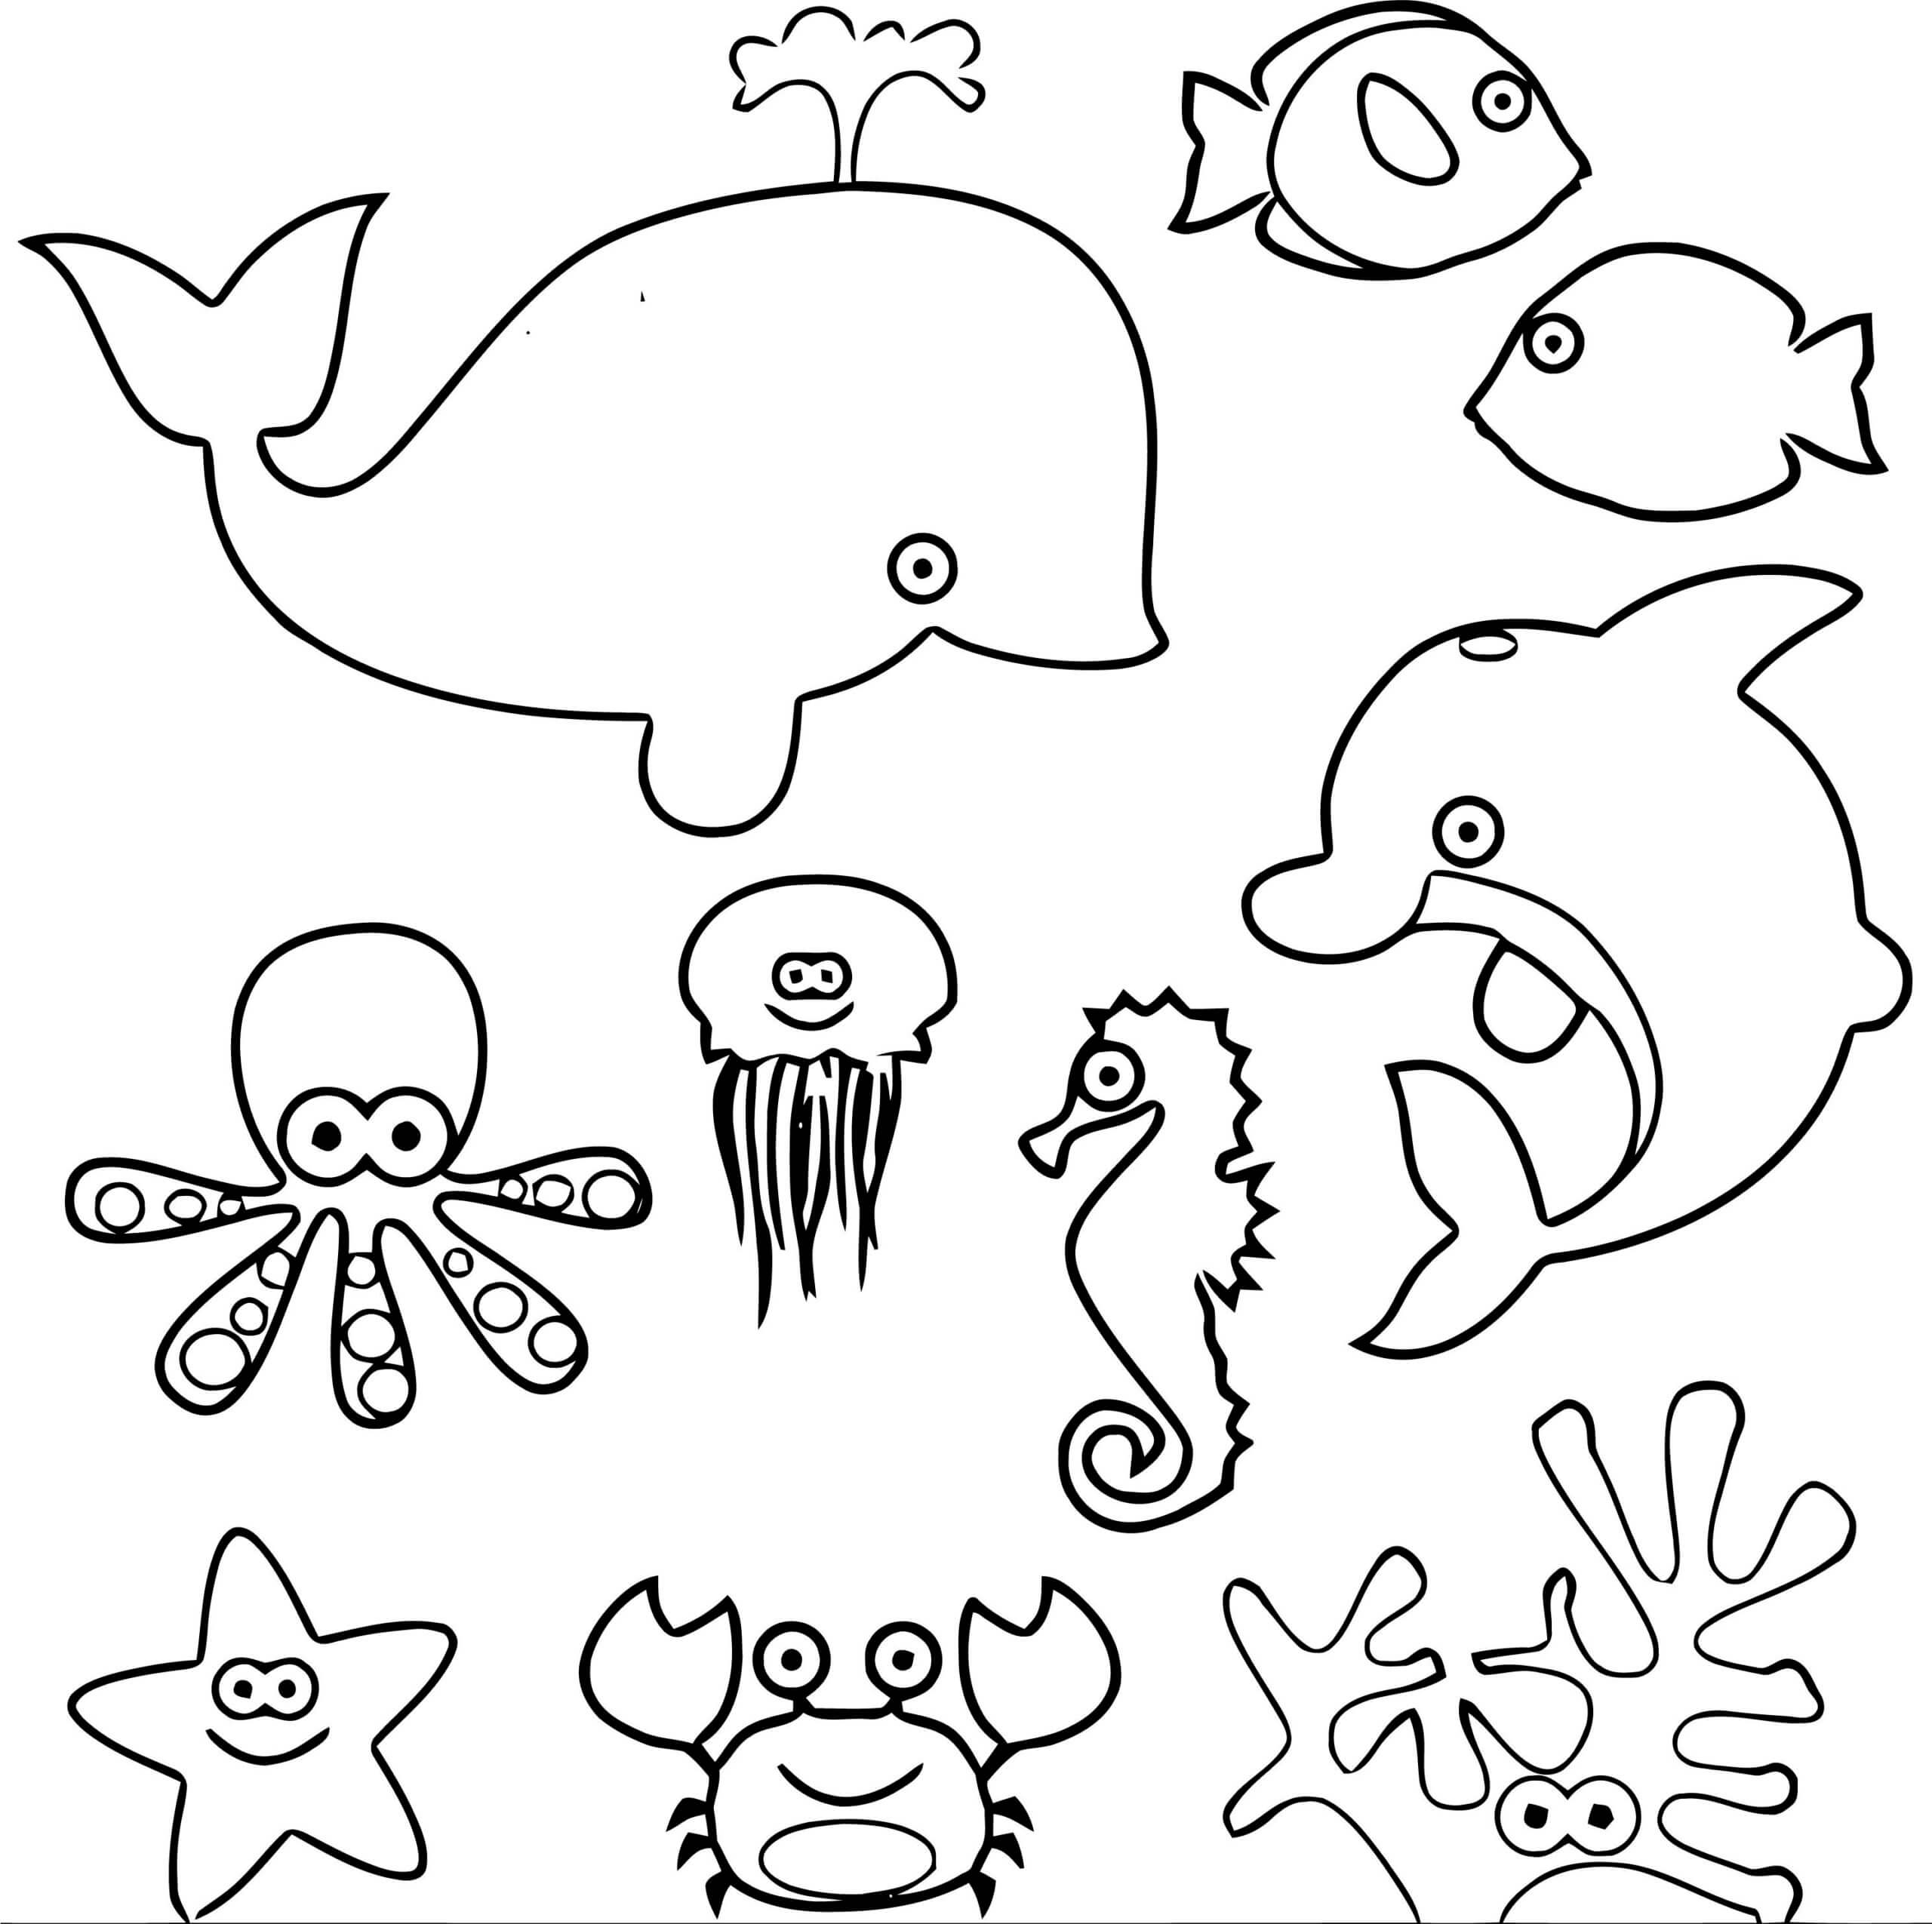 Hình tô màu động vật sống dưới nước đơn giản dễ thương